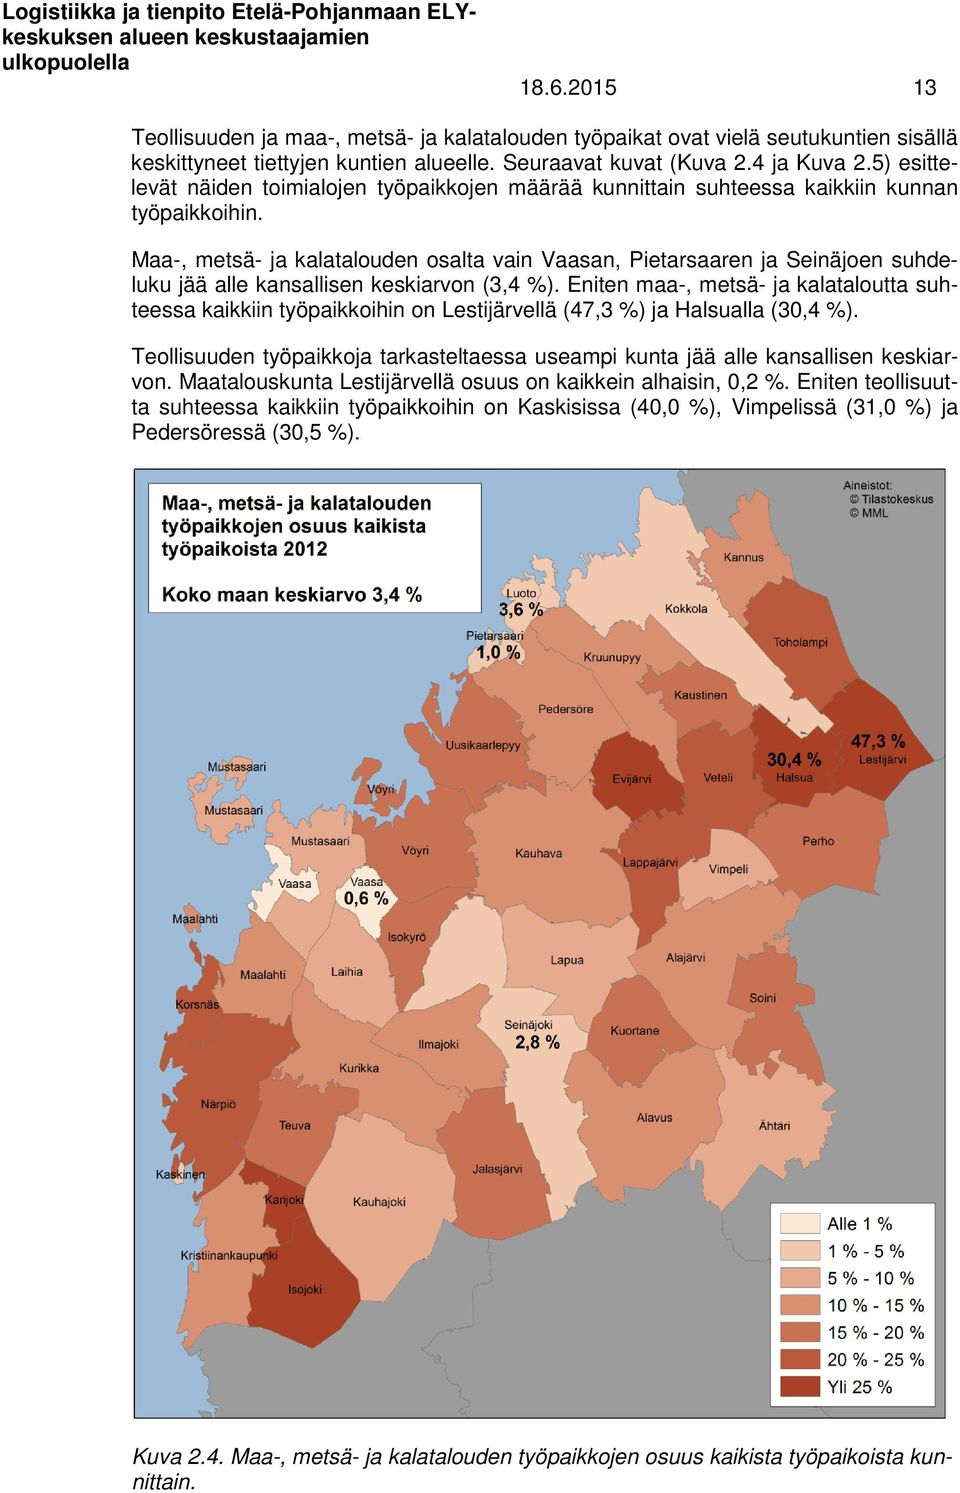 Maa-, metsä- ja kalatalouden osalta vain Vaasan, Pietarsaaren ja Seinäjoen suhdeluku jää alle kansallisen keskiarvon (3,4 %).